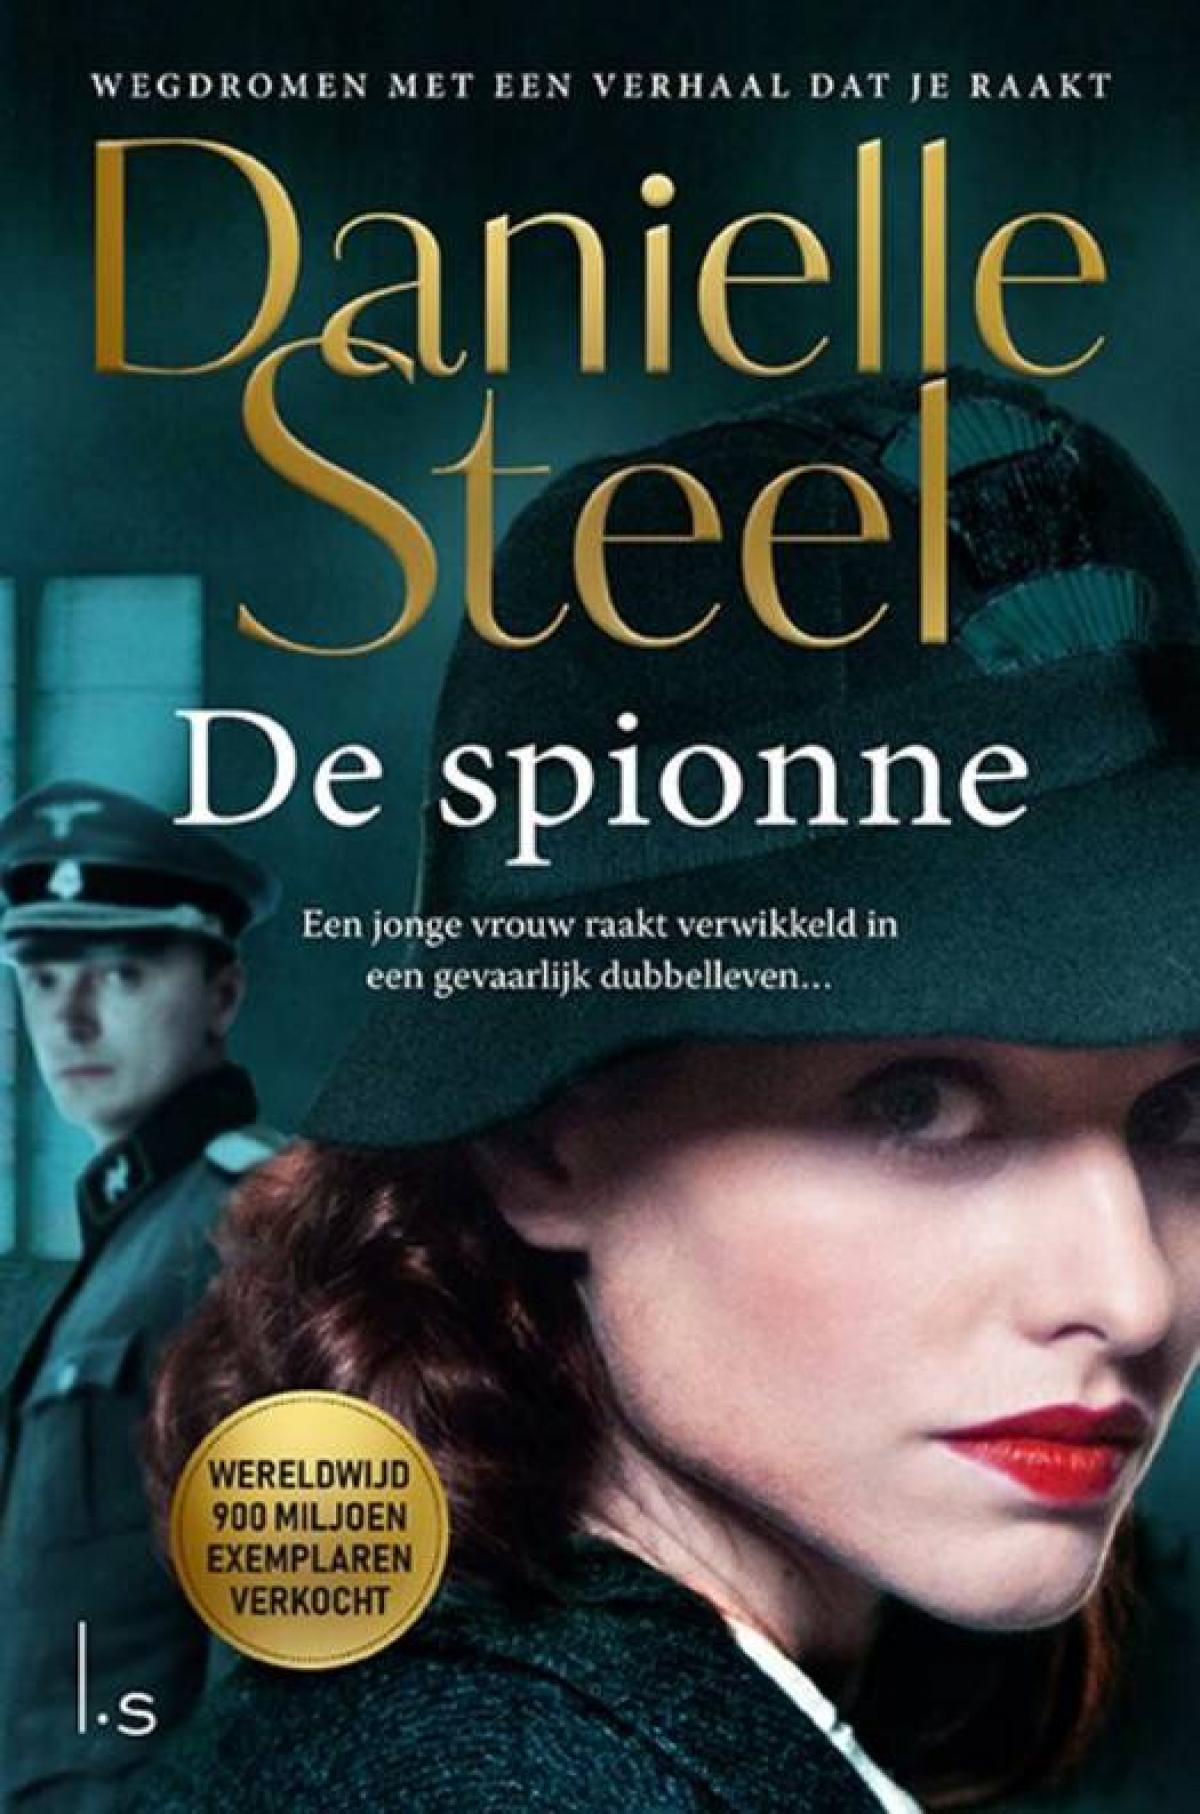 De spionne - Danielle Steel